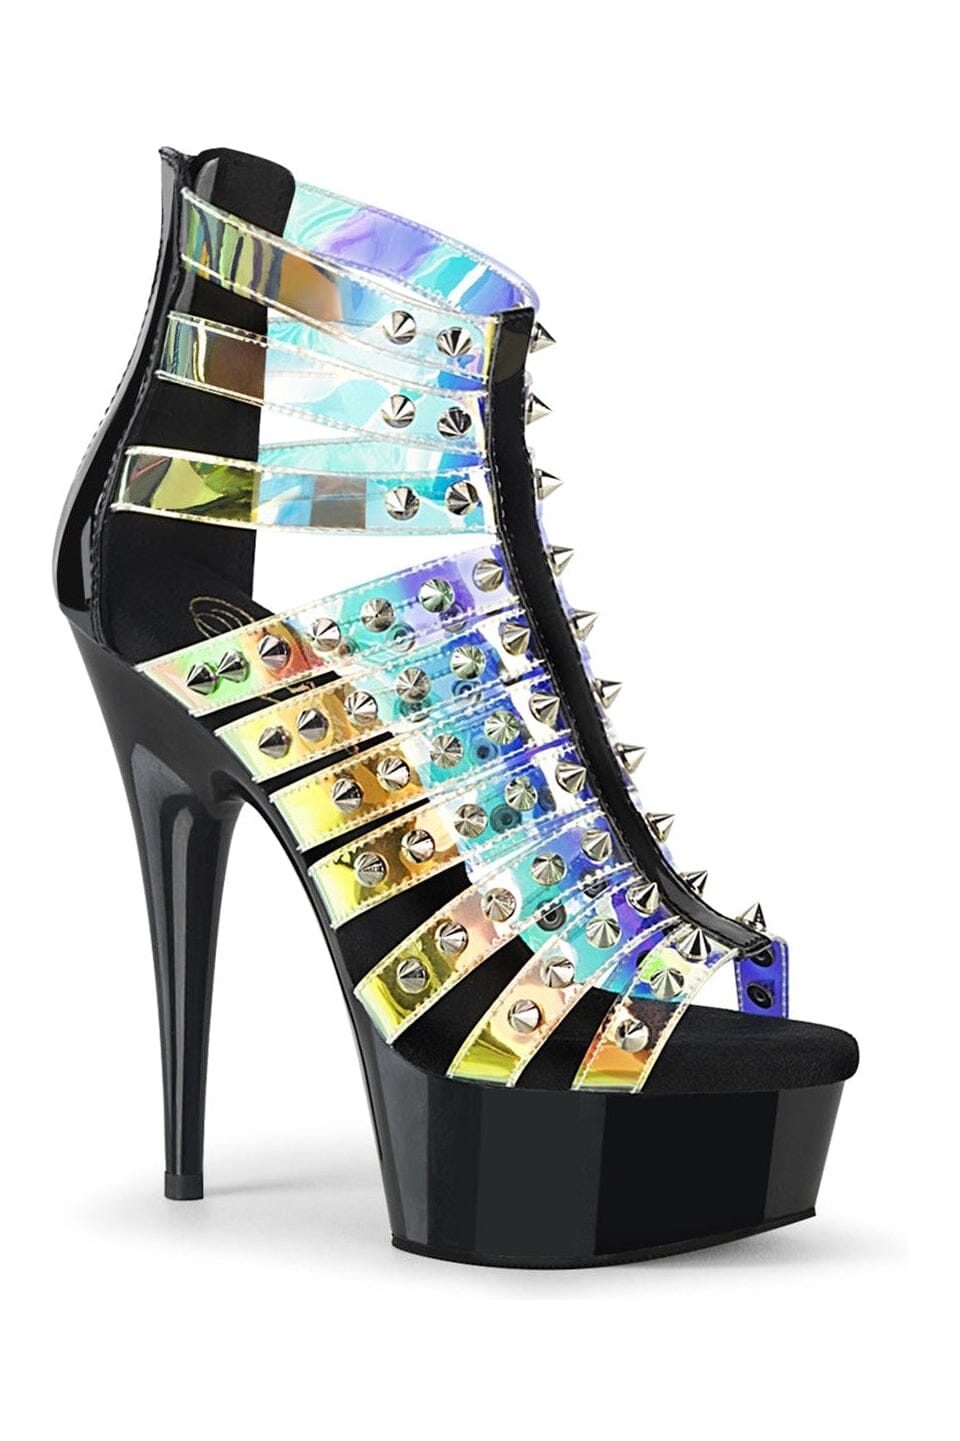 Pleaser Hologram Sandals Platform Stripper Shoes | Buy at Sexyshoes.com